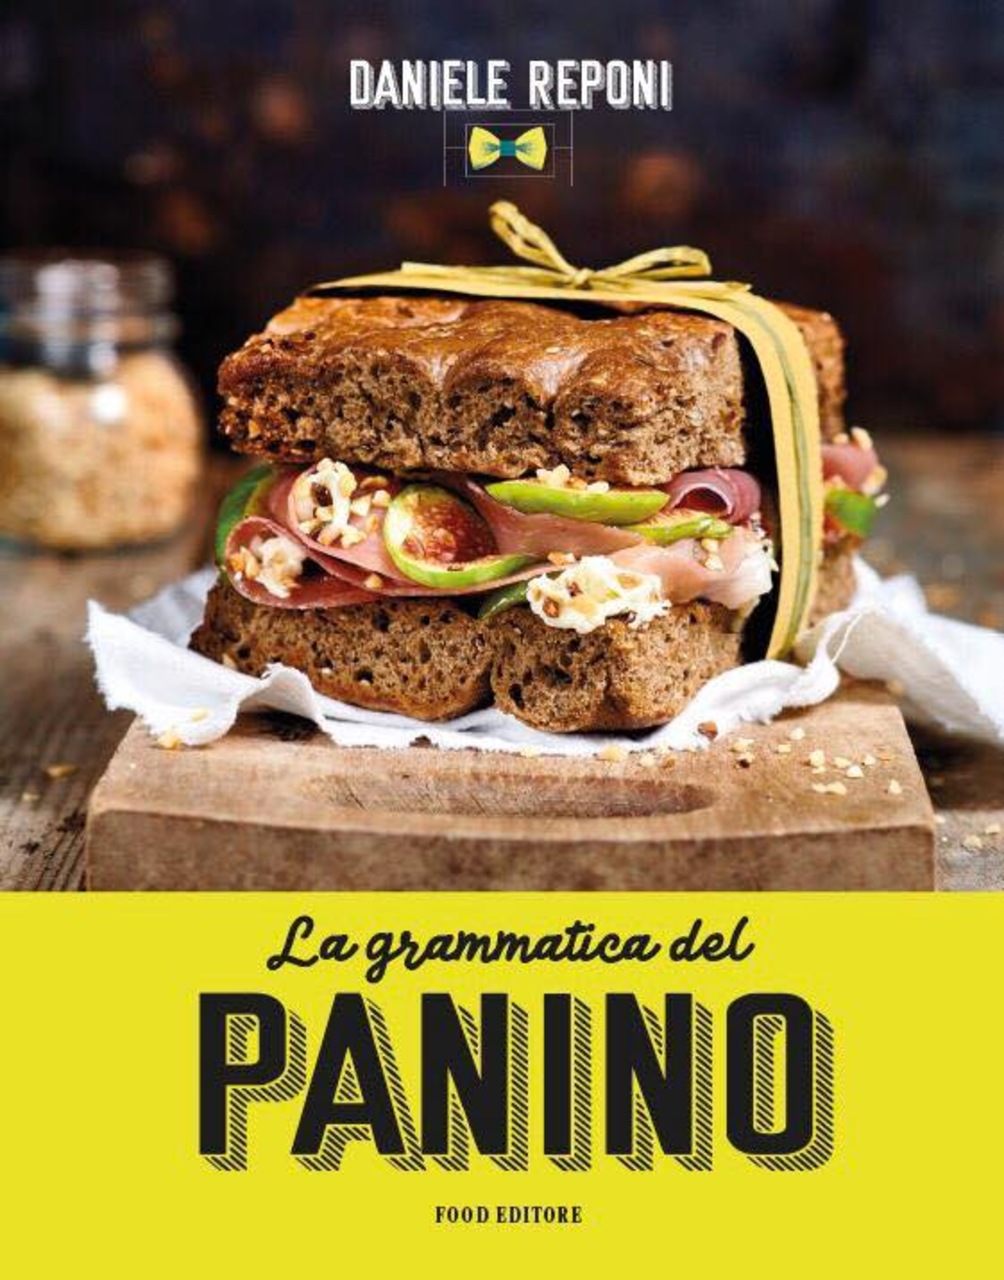 Сендвіч для гурманів: обкладинка книги Даніеле Репоні «Граматика сендвіча»